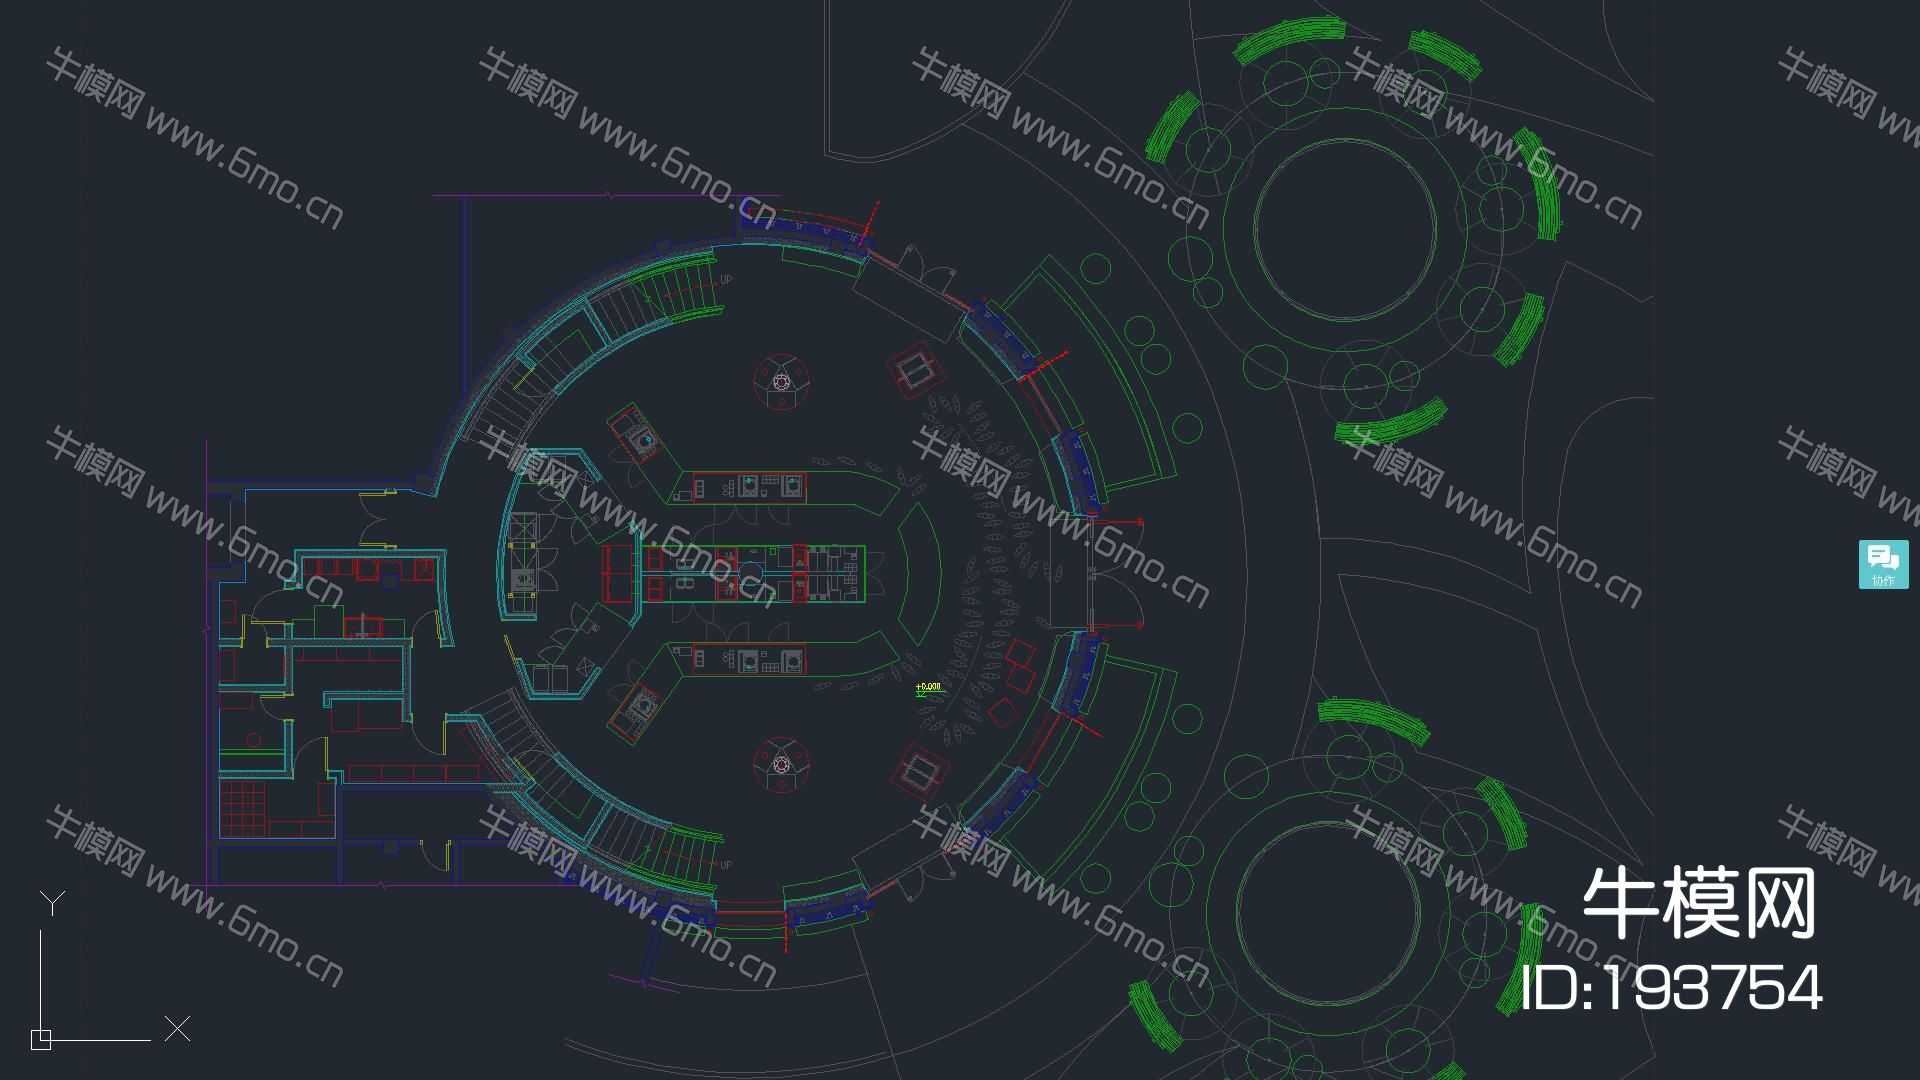 星巴克-上海GOOD HOUSE迪士尼店施工图+实景拍摄+方案+物料表